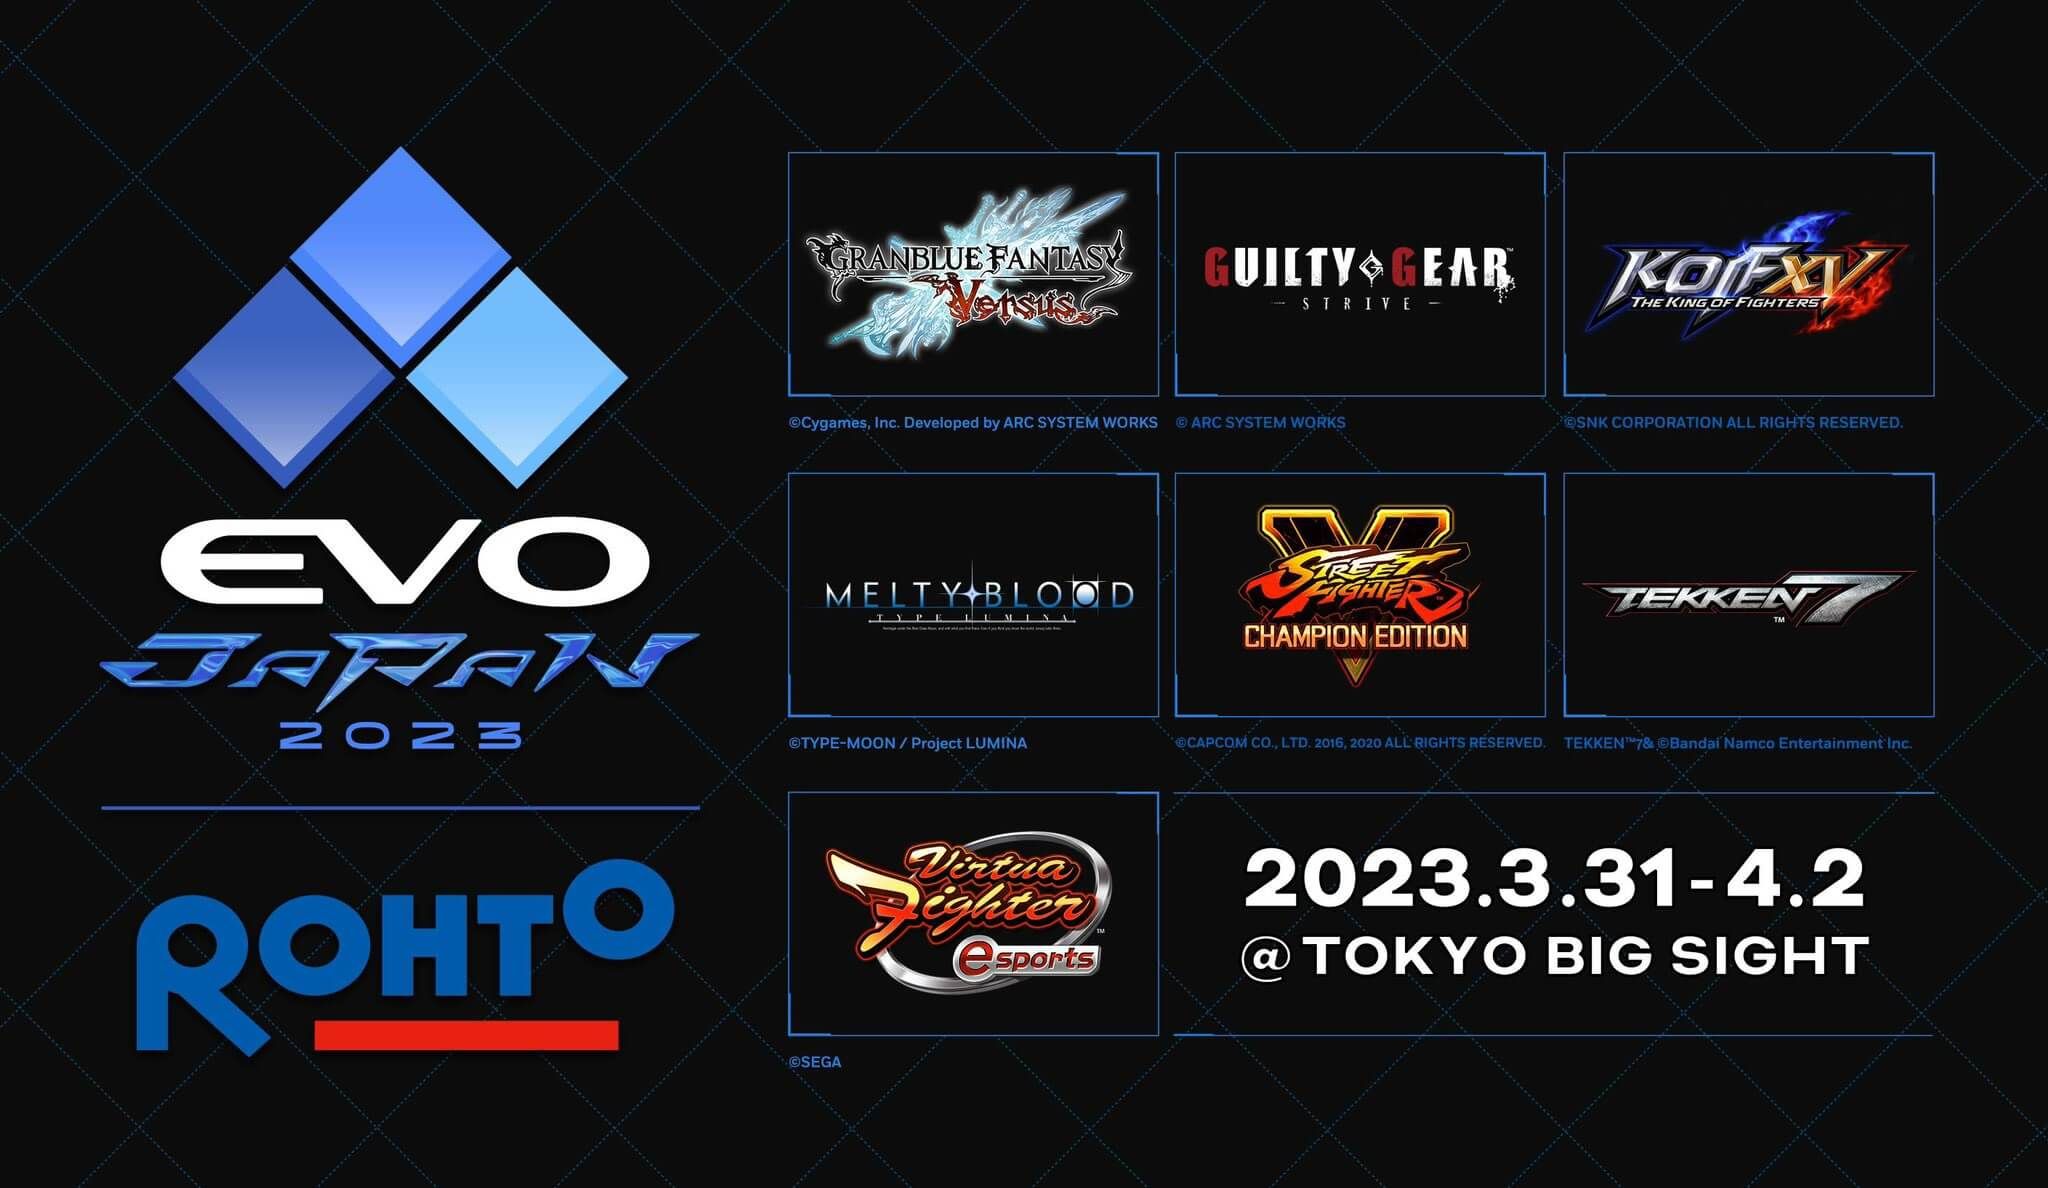 Evo Japan 2023 Registration Is Ended